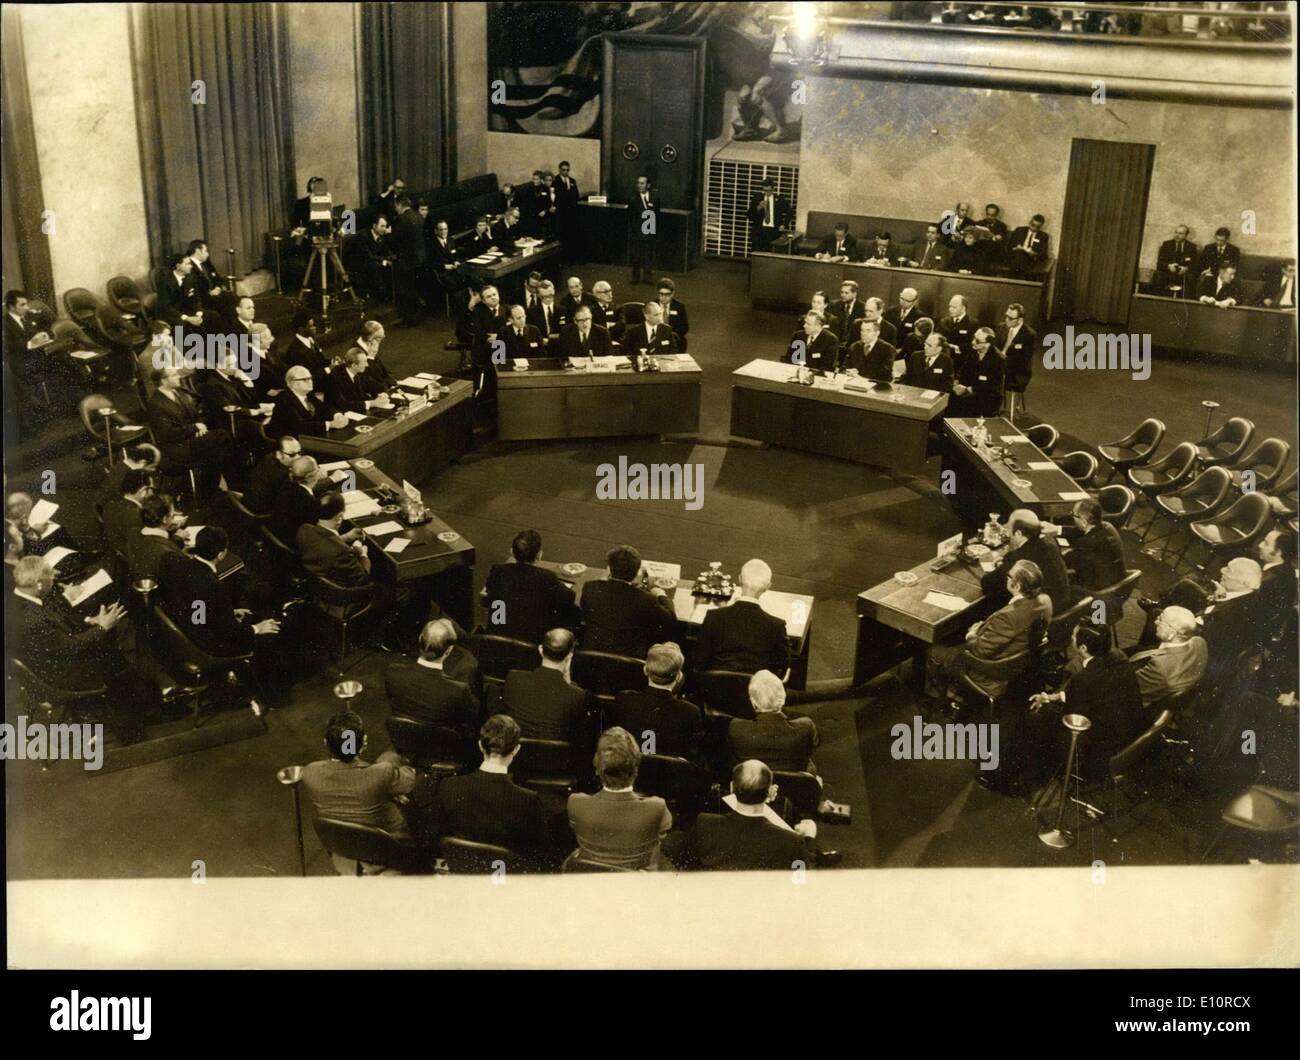 21 dicembre 1973 - La Conferenza di Pace organizzata sotto l egida dell Onu si apre presso il Palazzo delle Nazioni di Ginevra sotto la presidenza di Kurt Waldheim, segretario generale delle Nazioni Unite, con la partecipazione di Israele, Giordania ed Egitto. Foto Stock